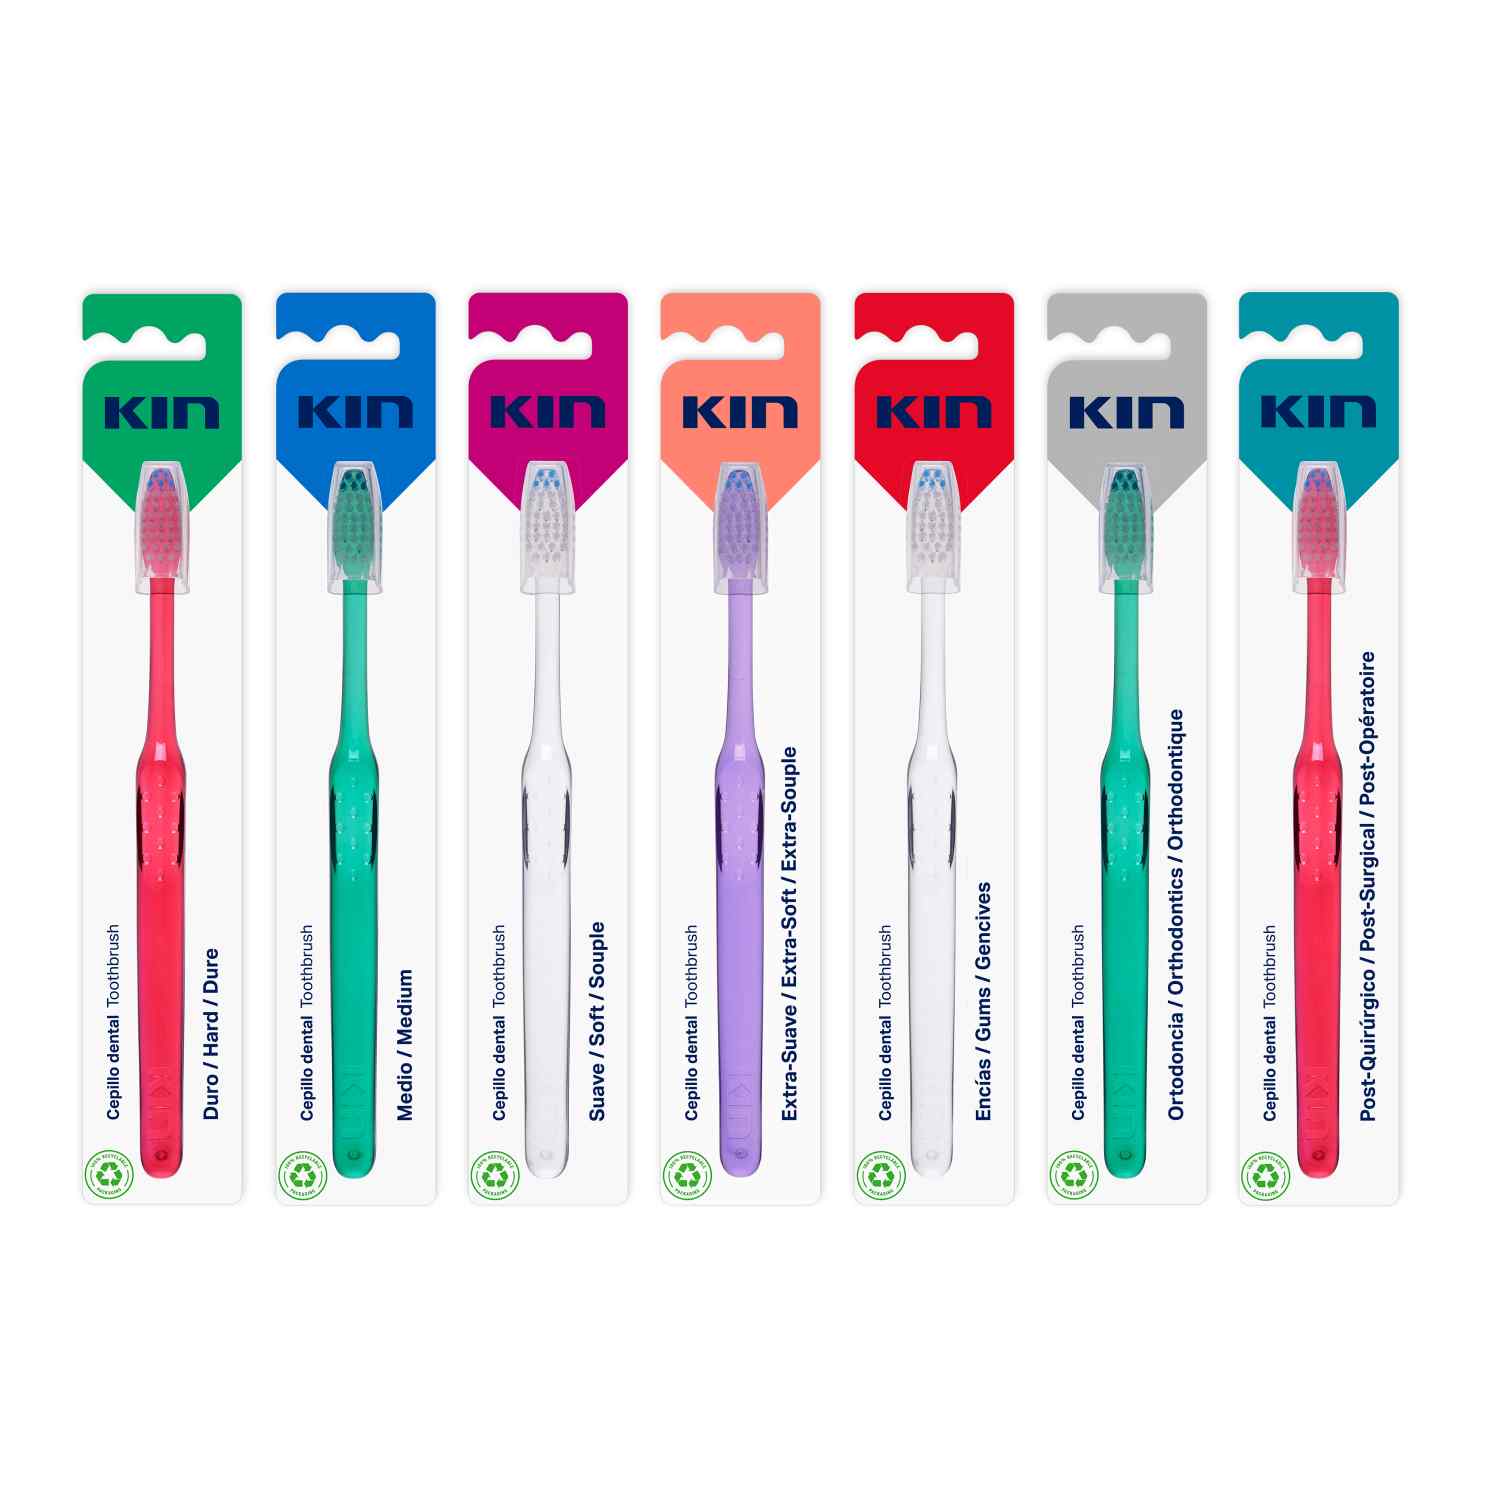 Kin Manual toothbrushes